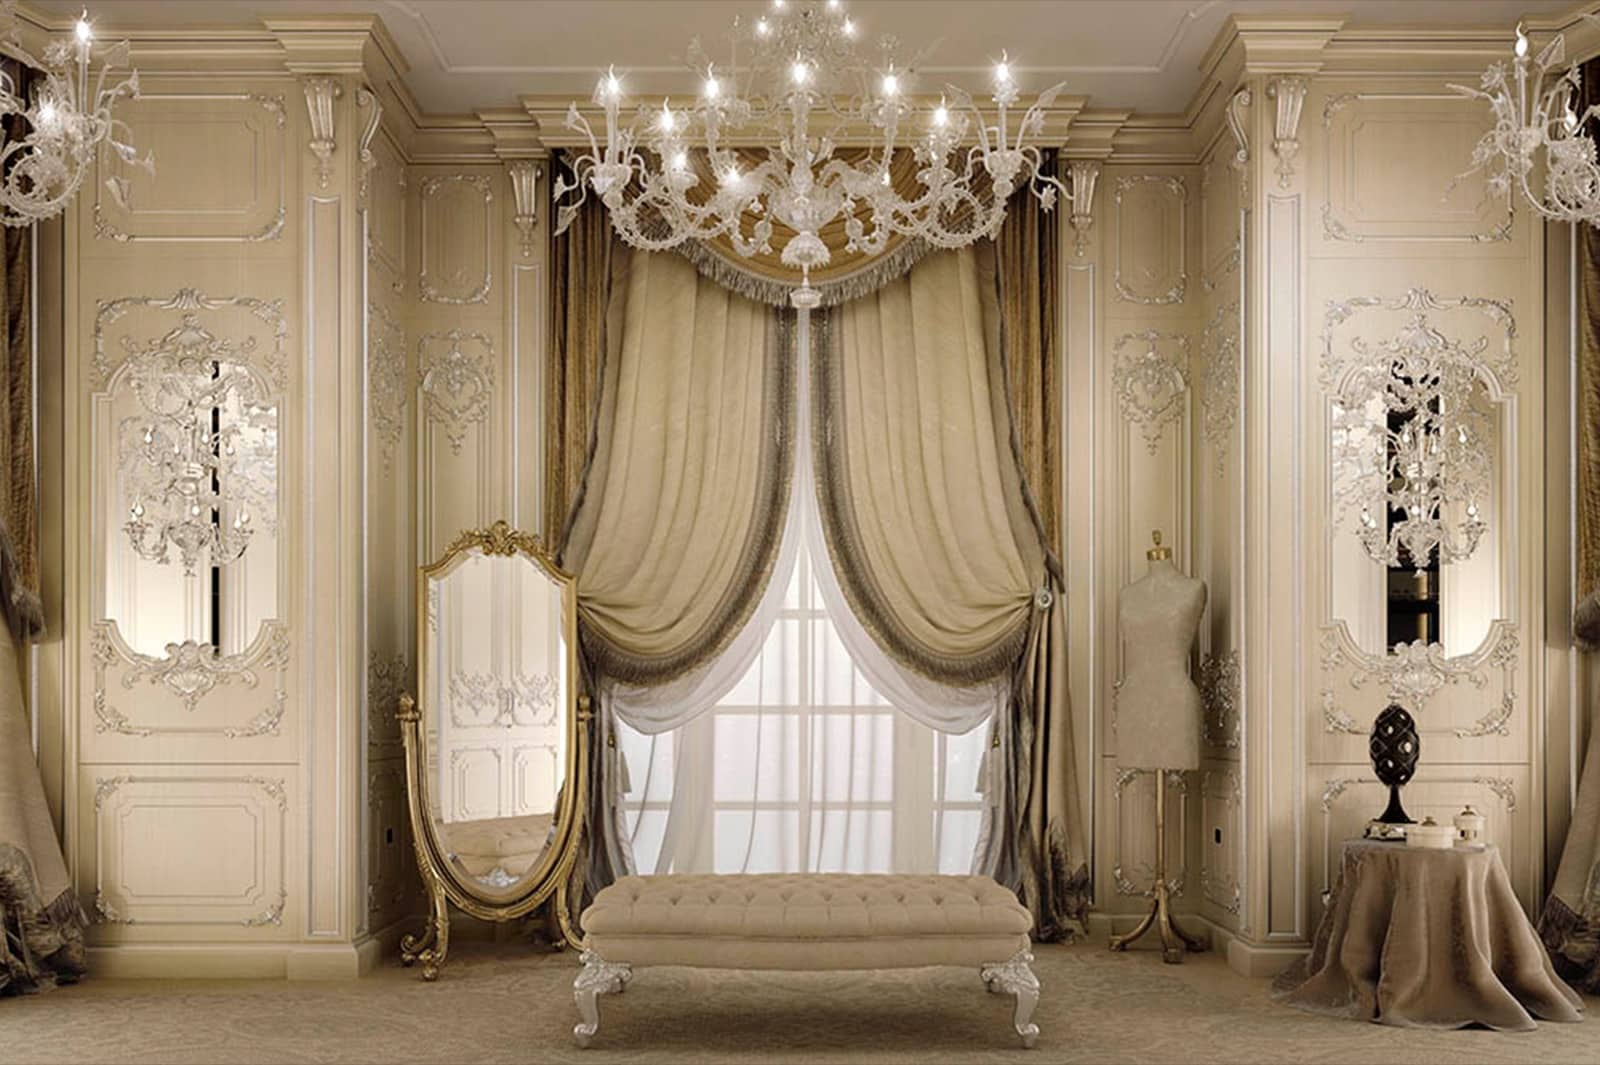 dekorace klasické luxusní vily se záclonami panely boiserie doplňky tapety lustr Swarovski laté detaily elegantní tkaniny nejlepší kvalita vyrobeno v Itálii nápad